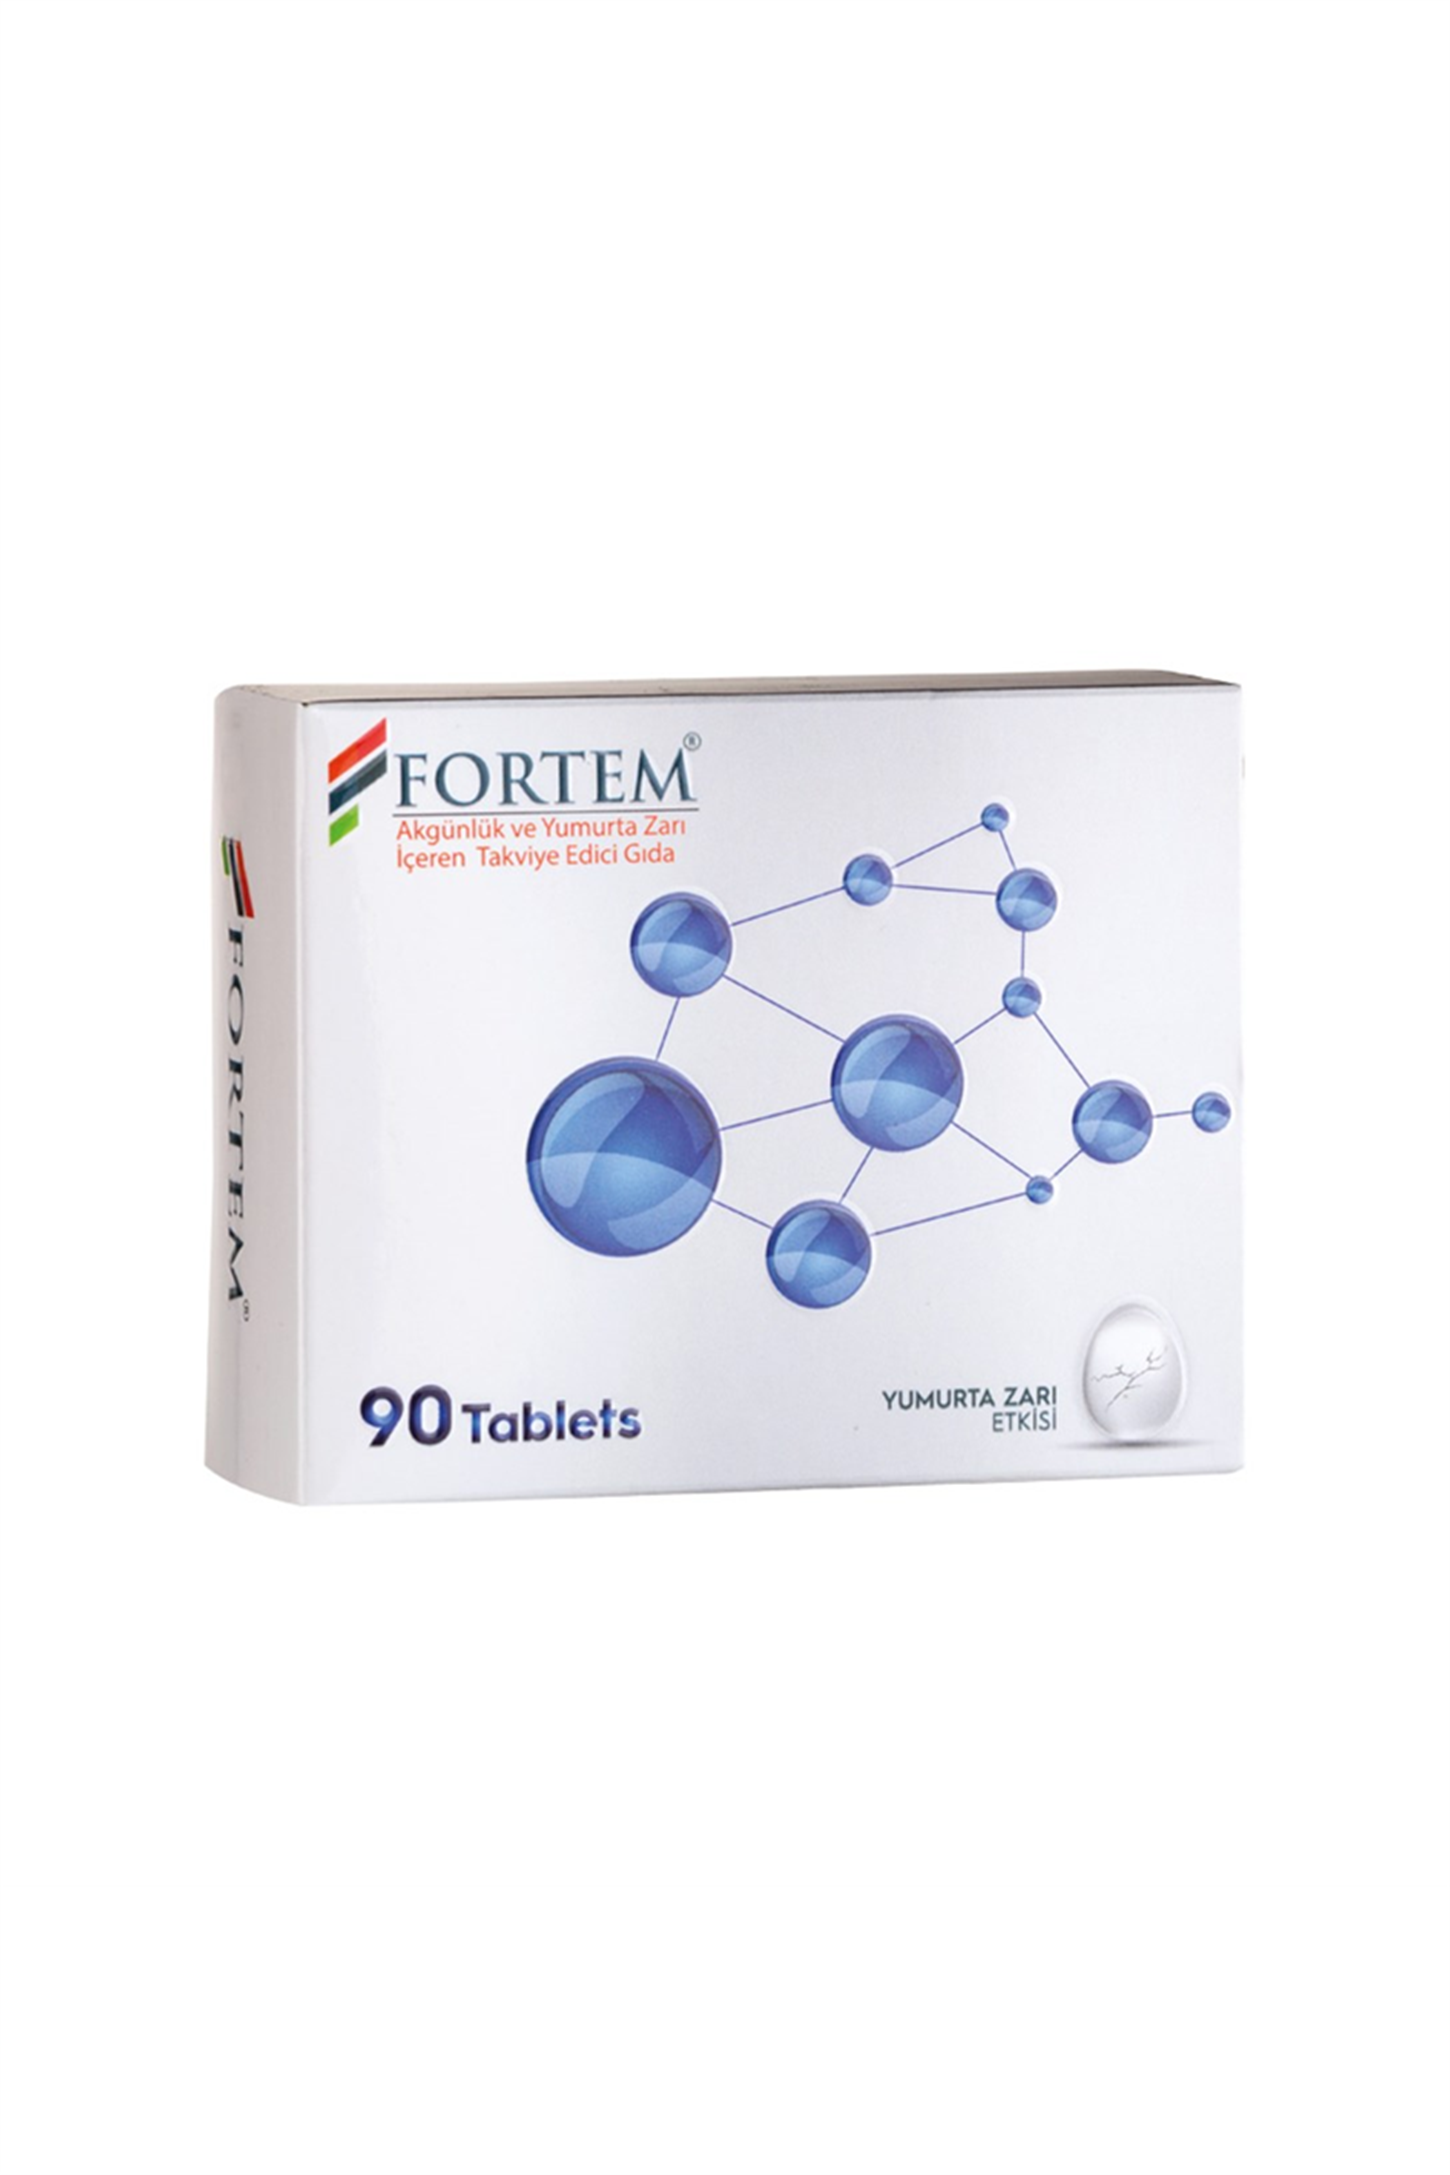 Fortem Akgünlük Yumurta Zarı Etkili 60 Tablet | Kozmovital